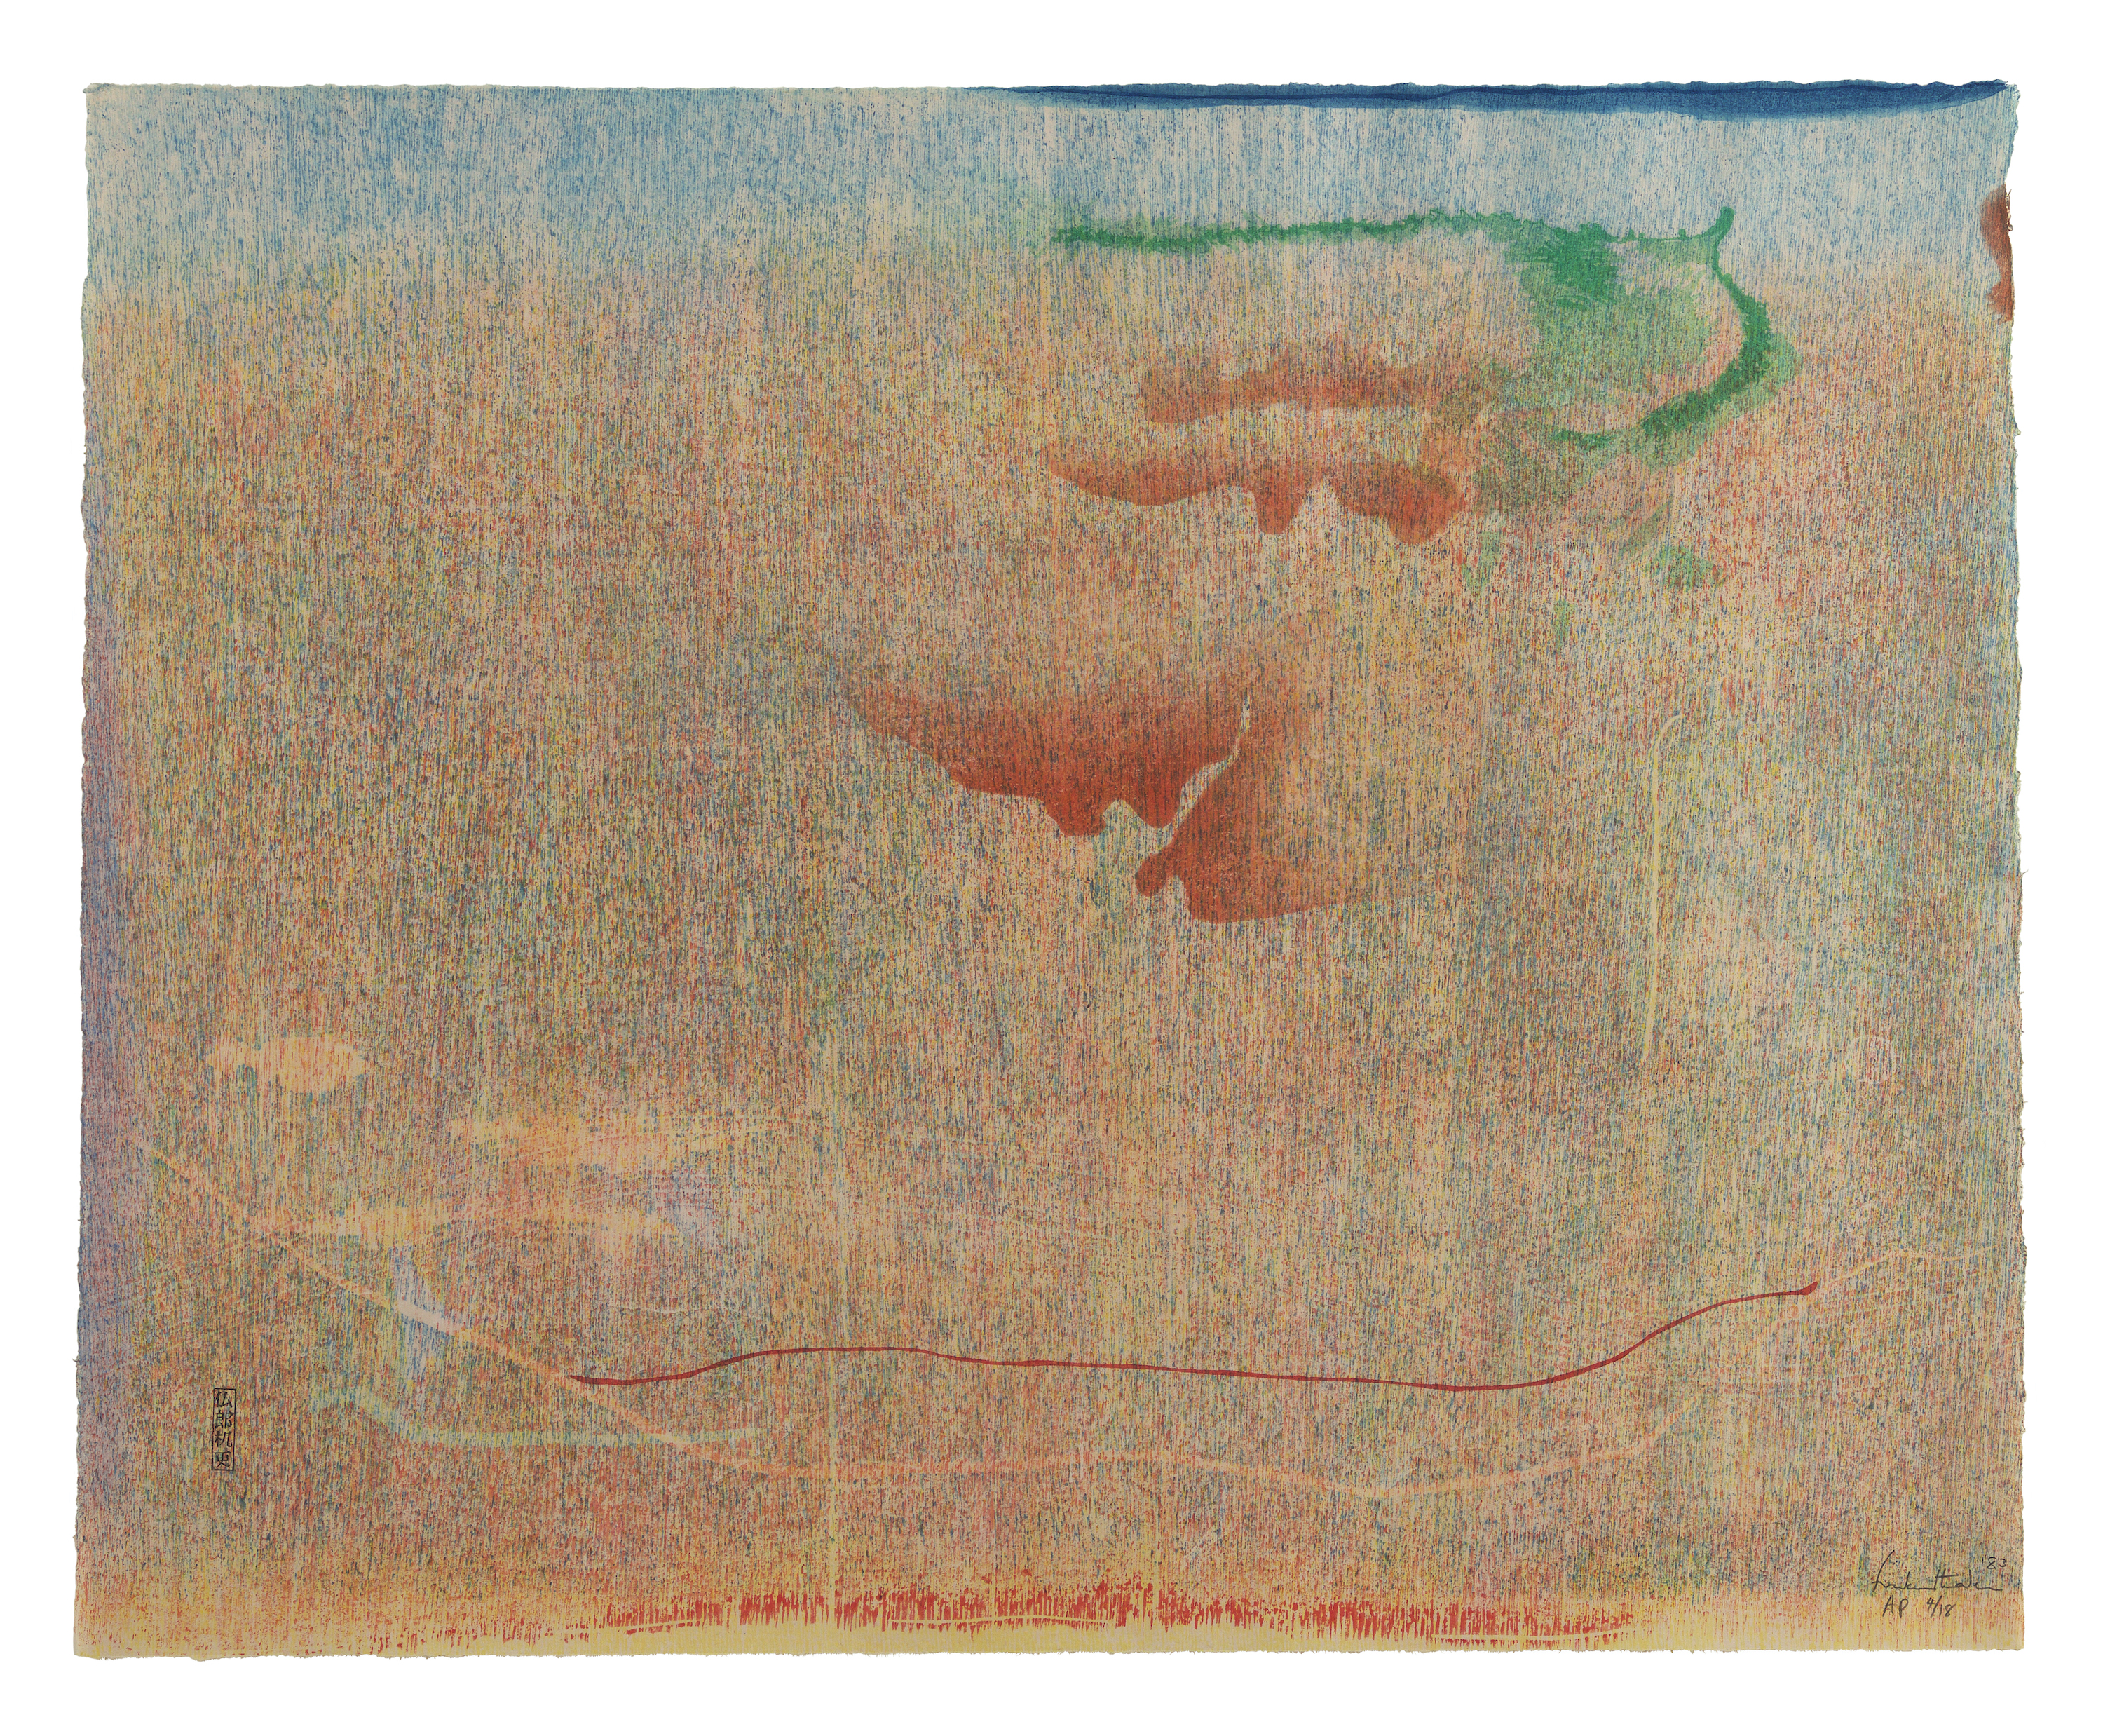 Cédrusdomb by Helen Frankenthaler - 1983 - 51,4 x 62,9 cm 